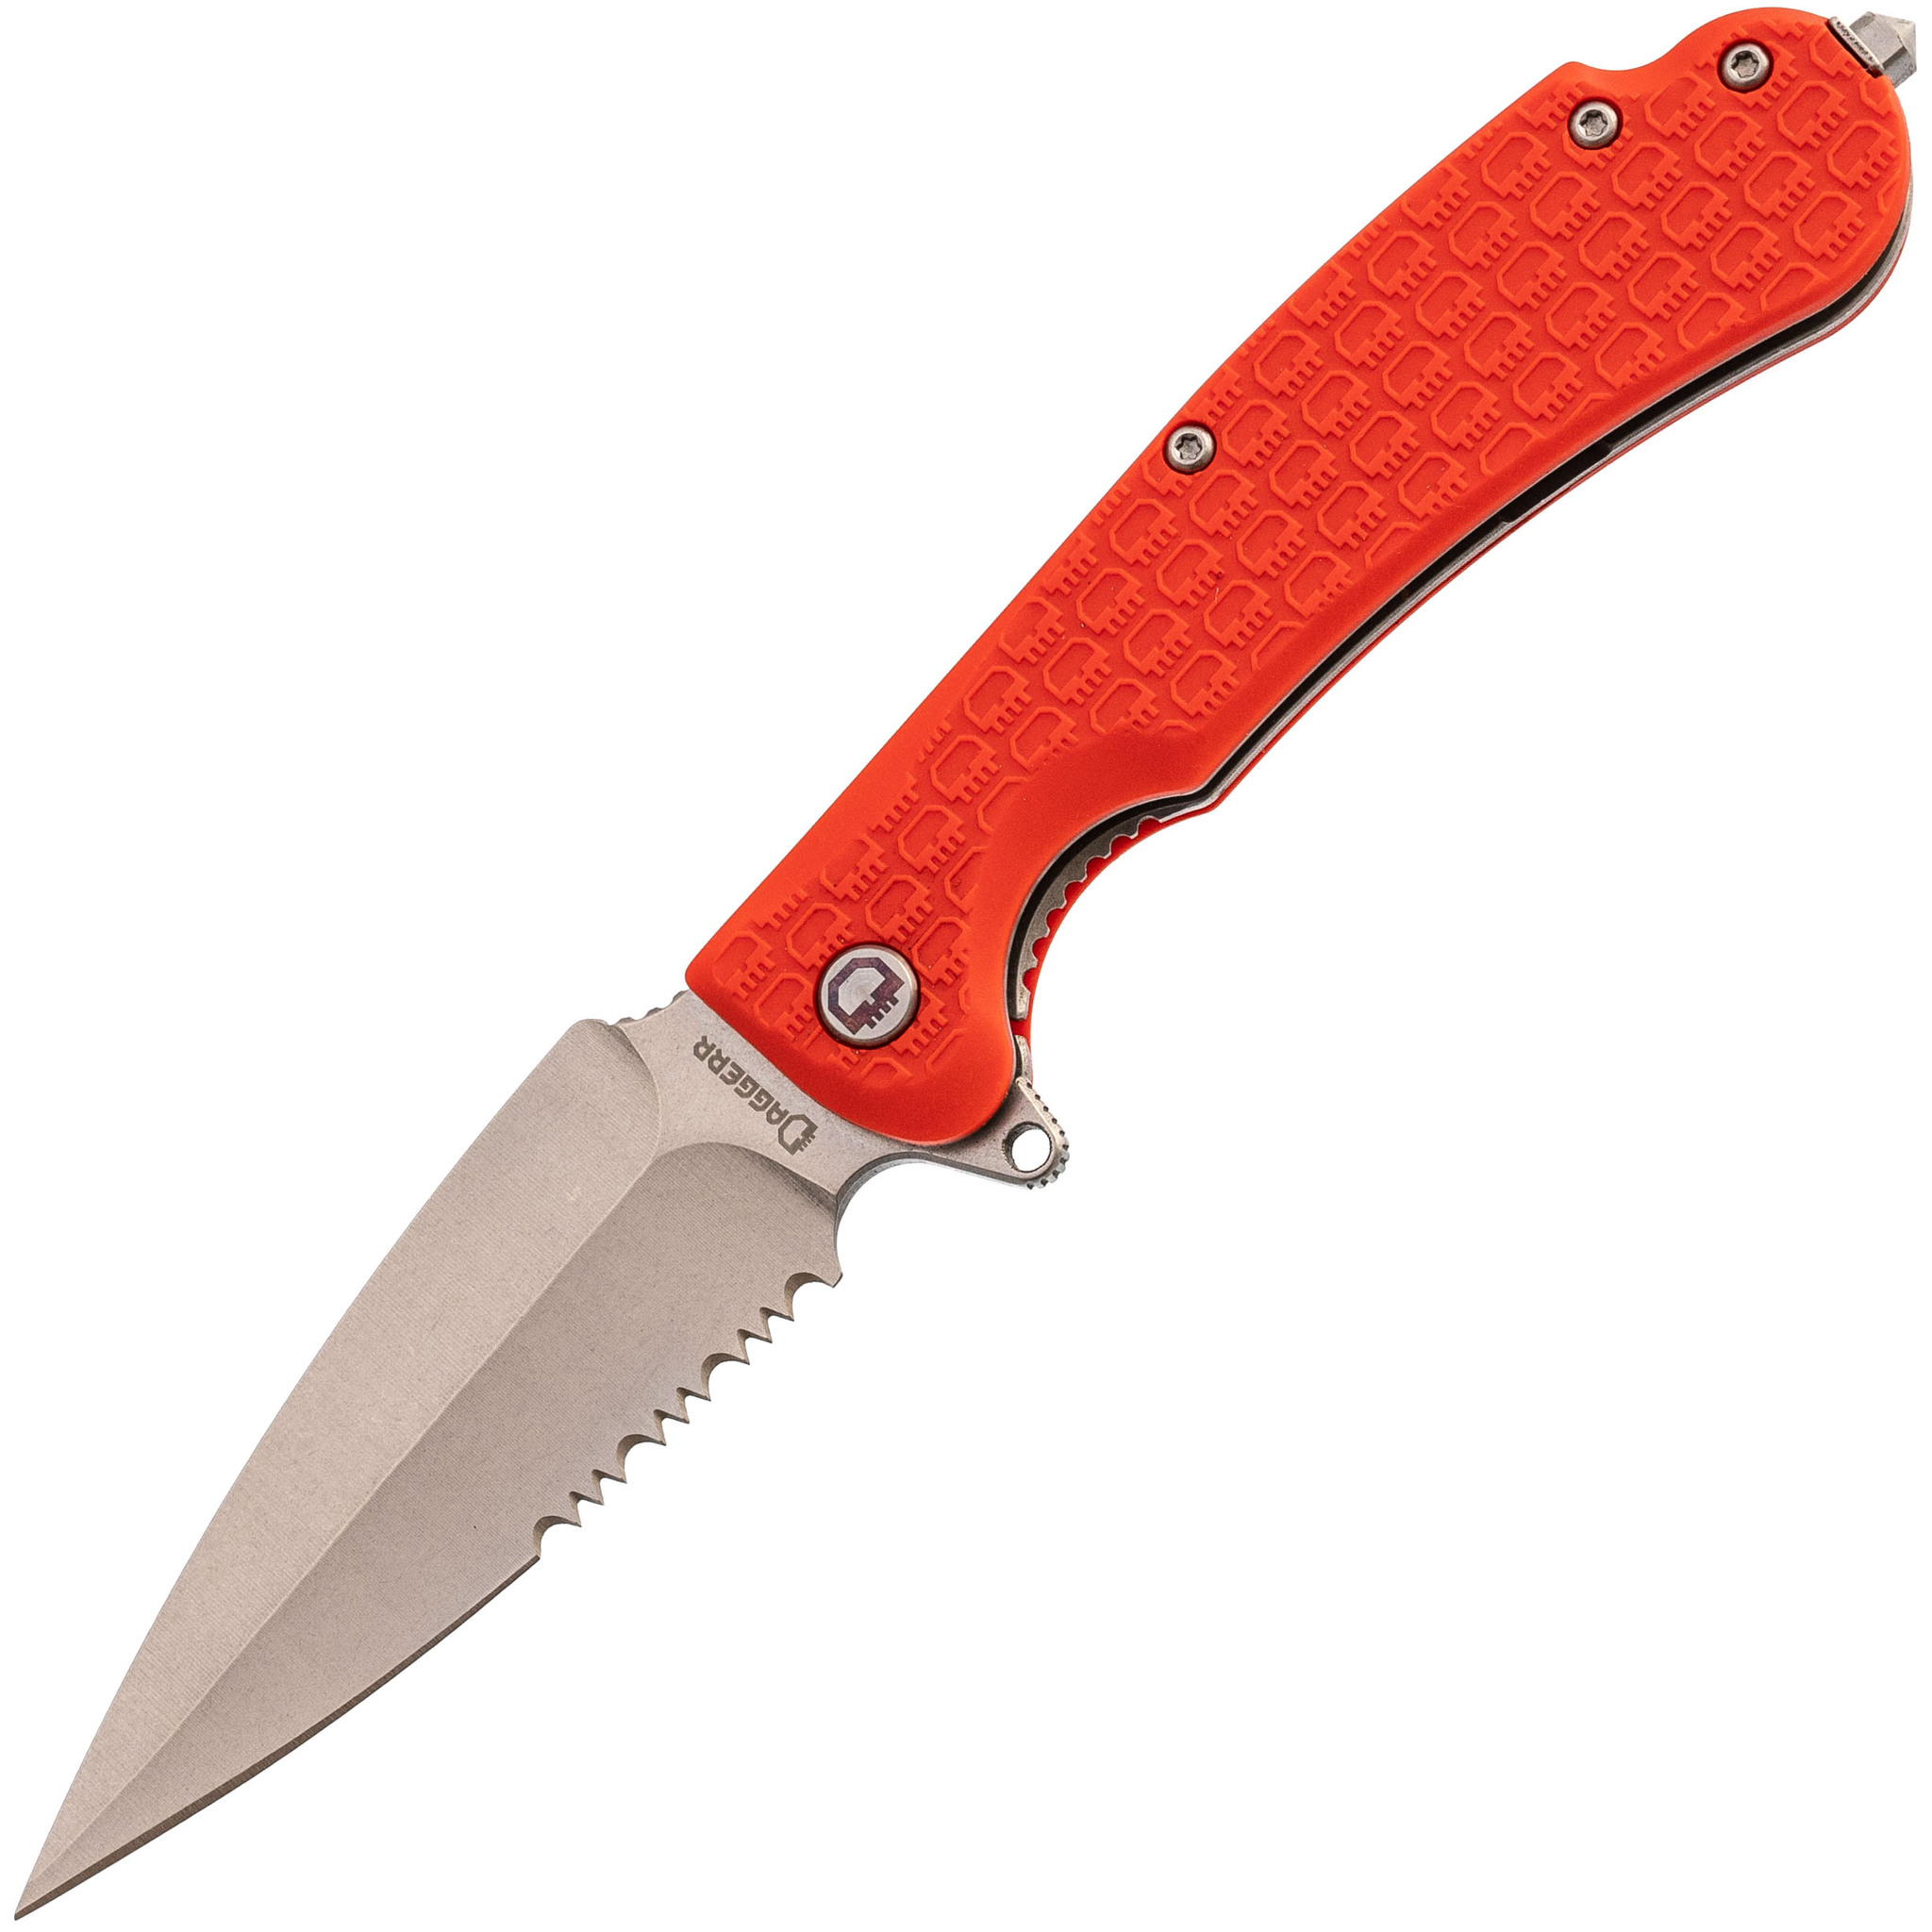 Складной нож Daggerr Urban 2 Orange SW Serrated, сталь 8Cr14MoV, рукоять FRN